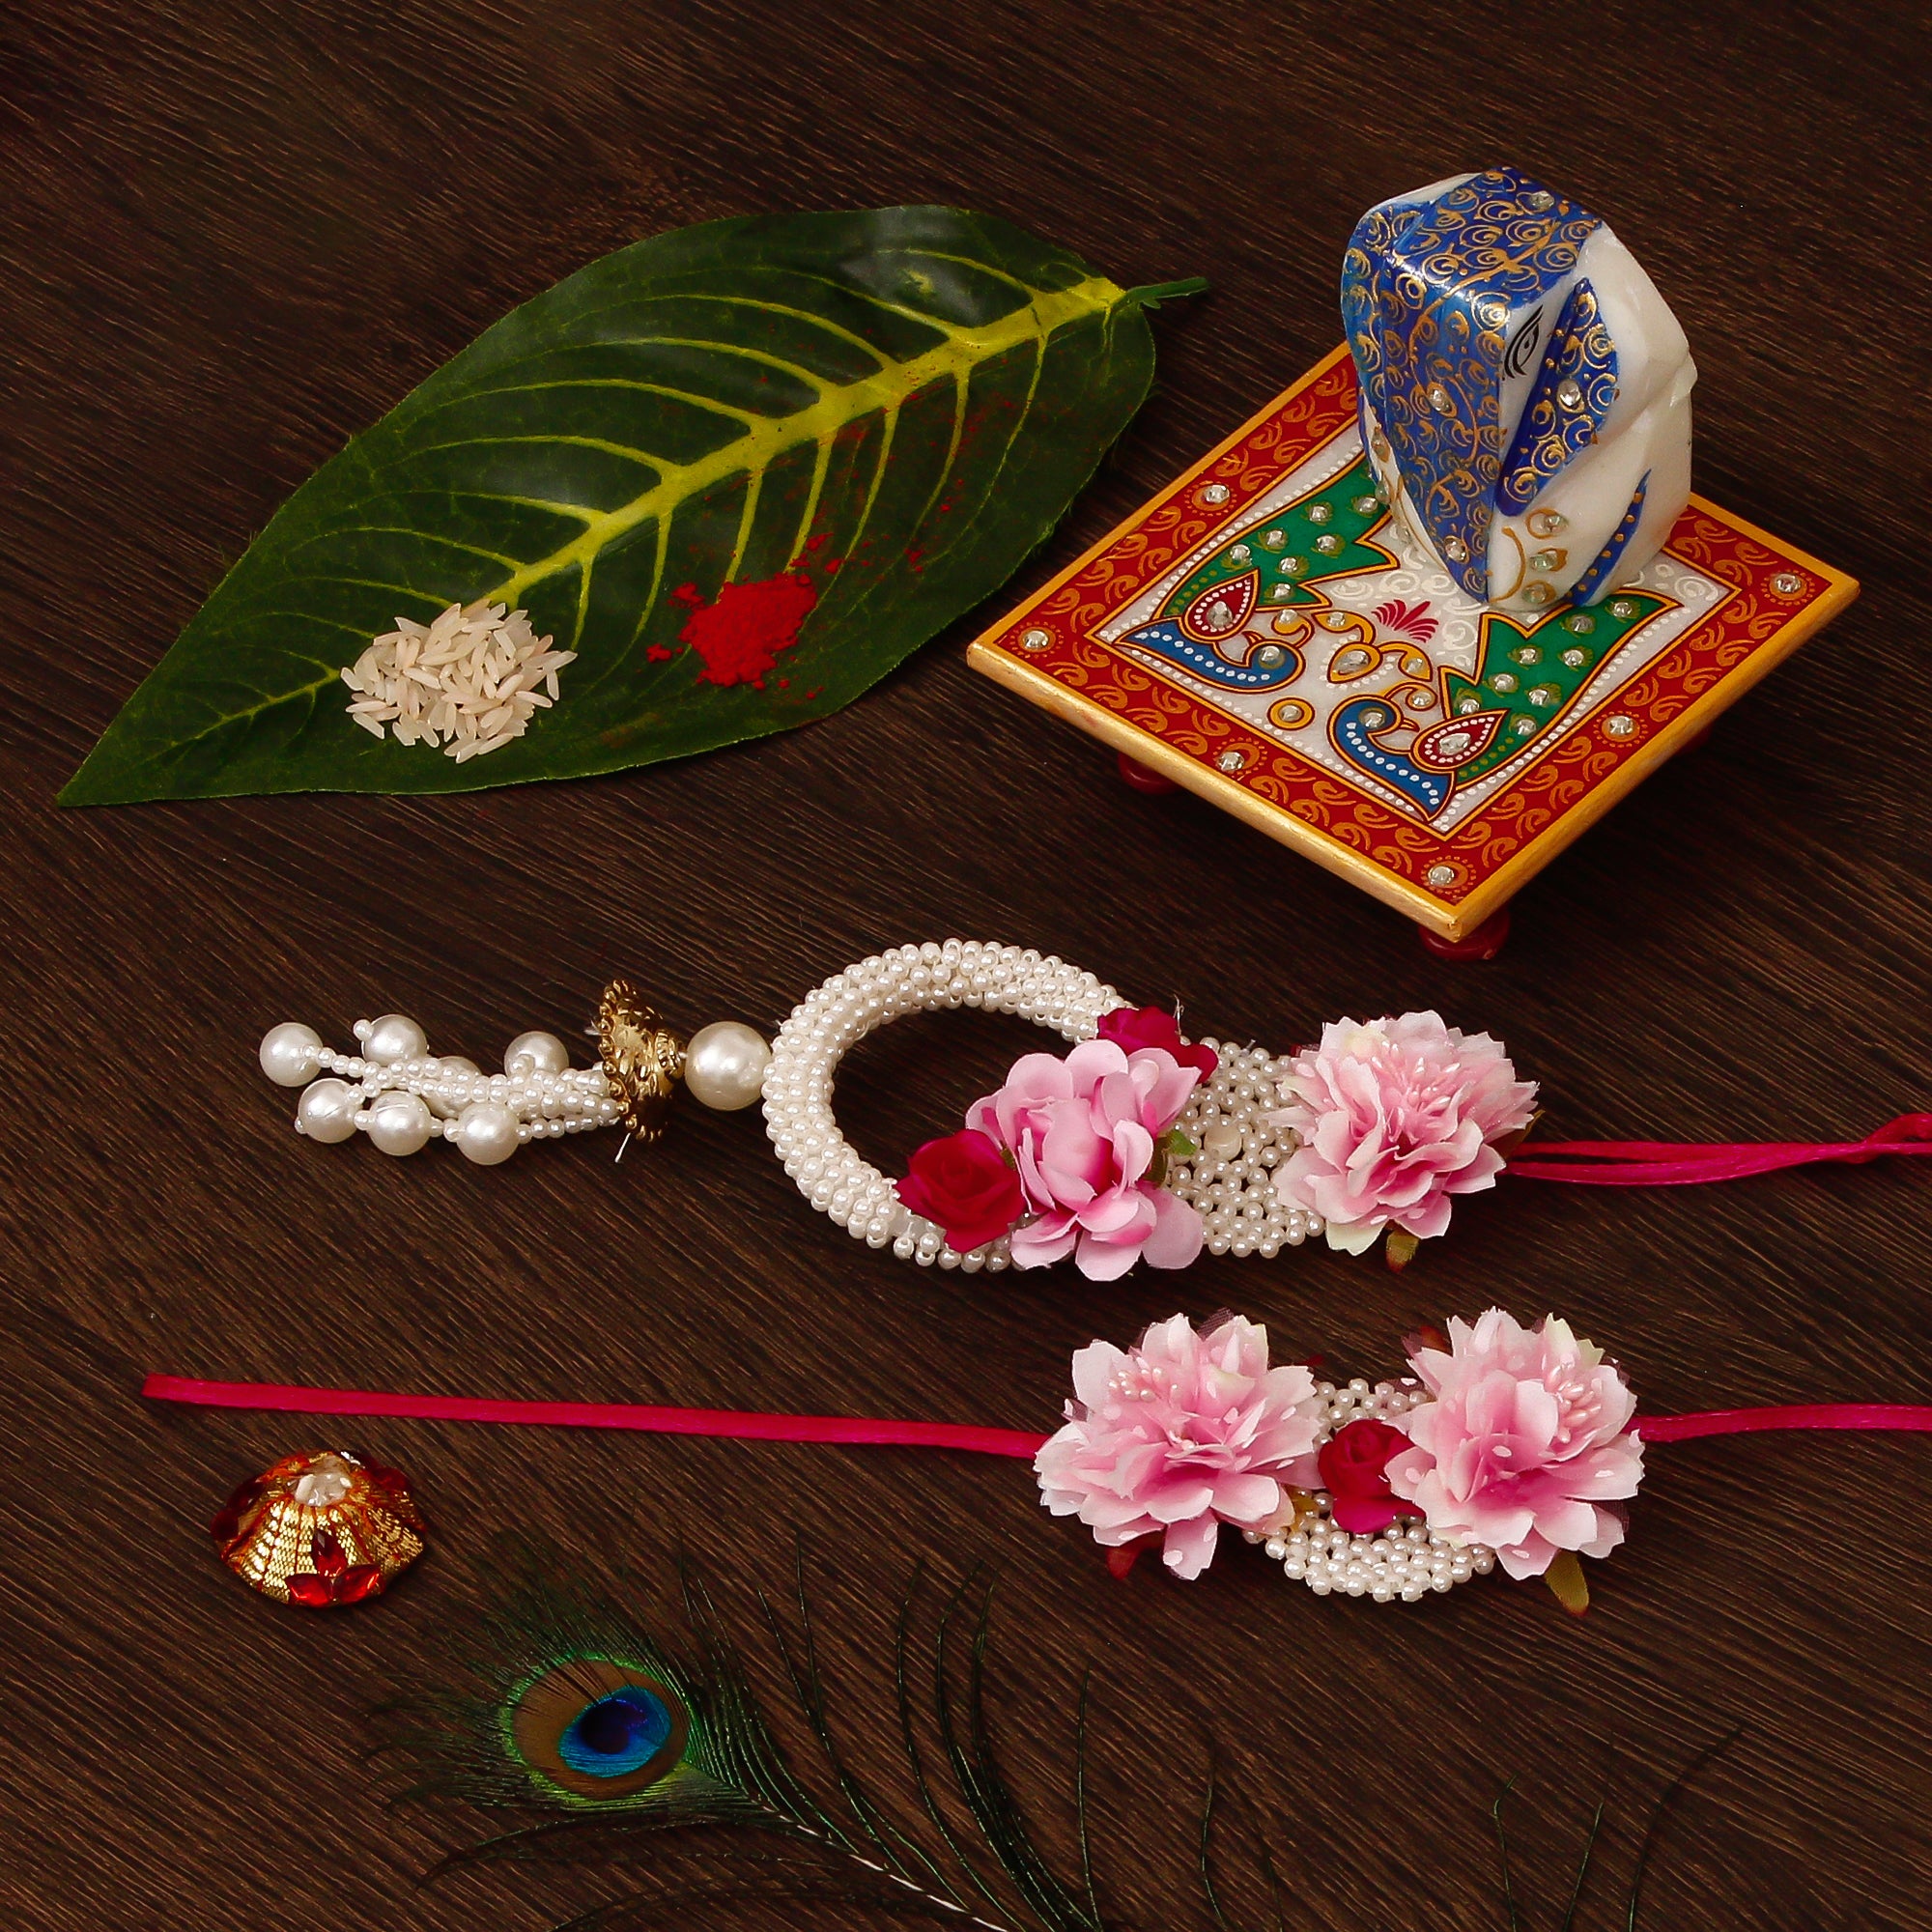 Floral Bhaiya Bhabhi Rakhi with Lord Ganesha on Marble Chowki and Roli Tikka Matki